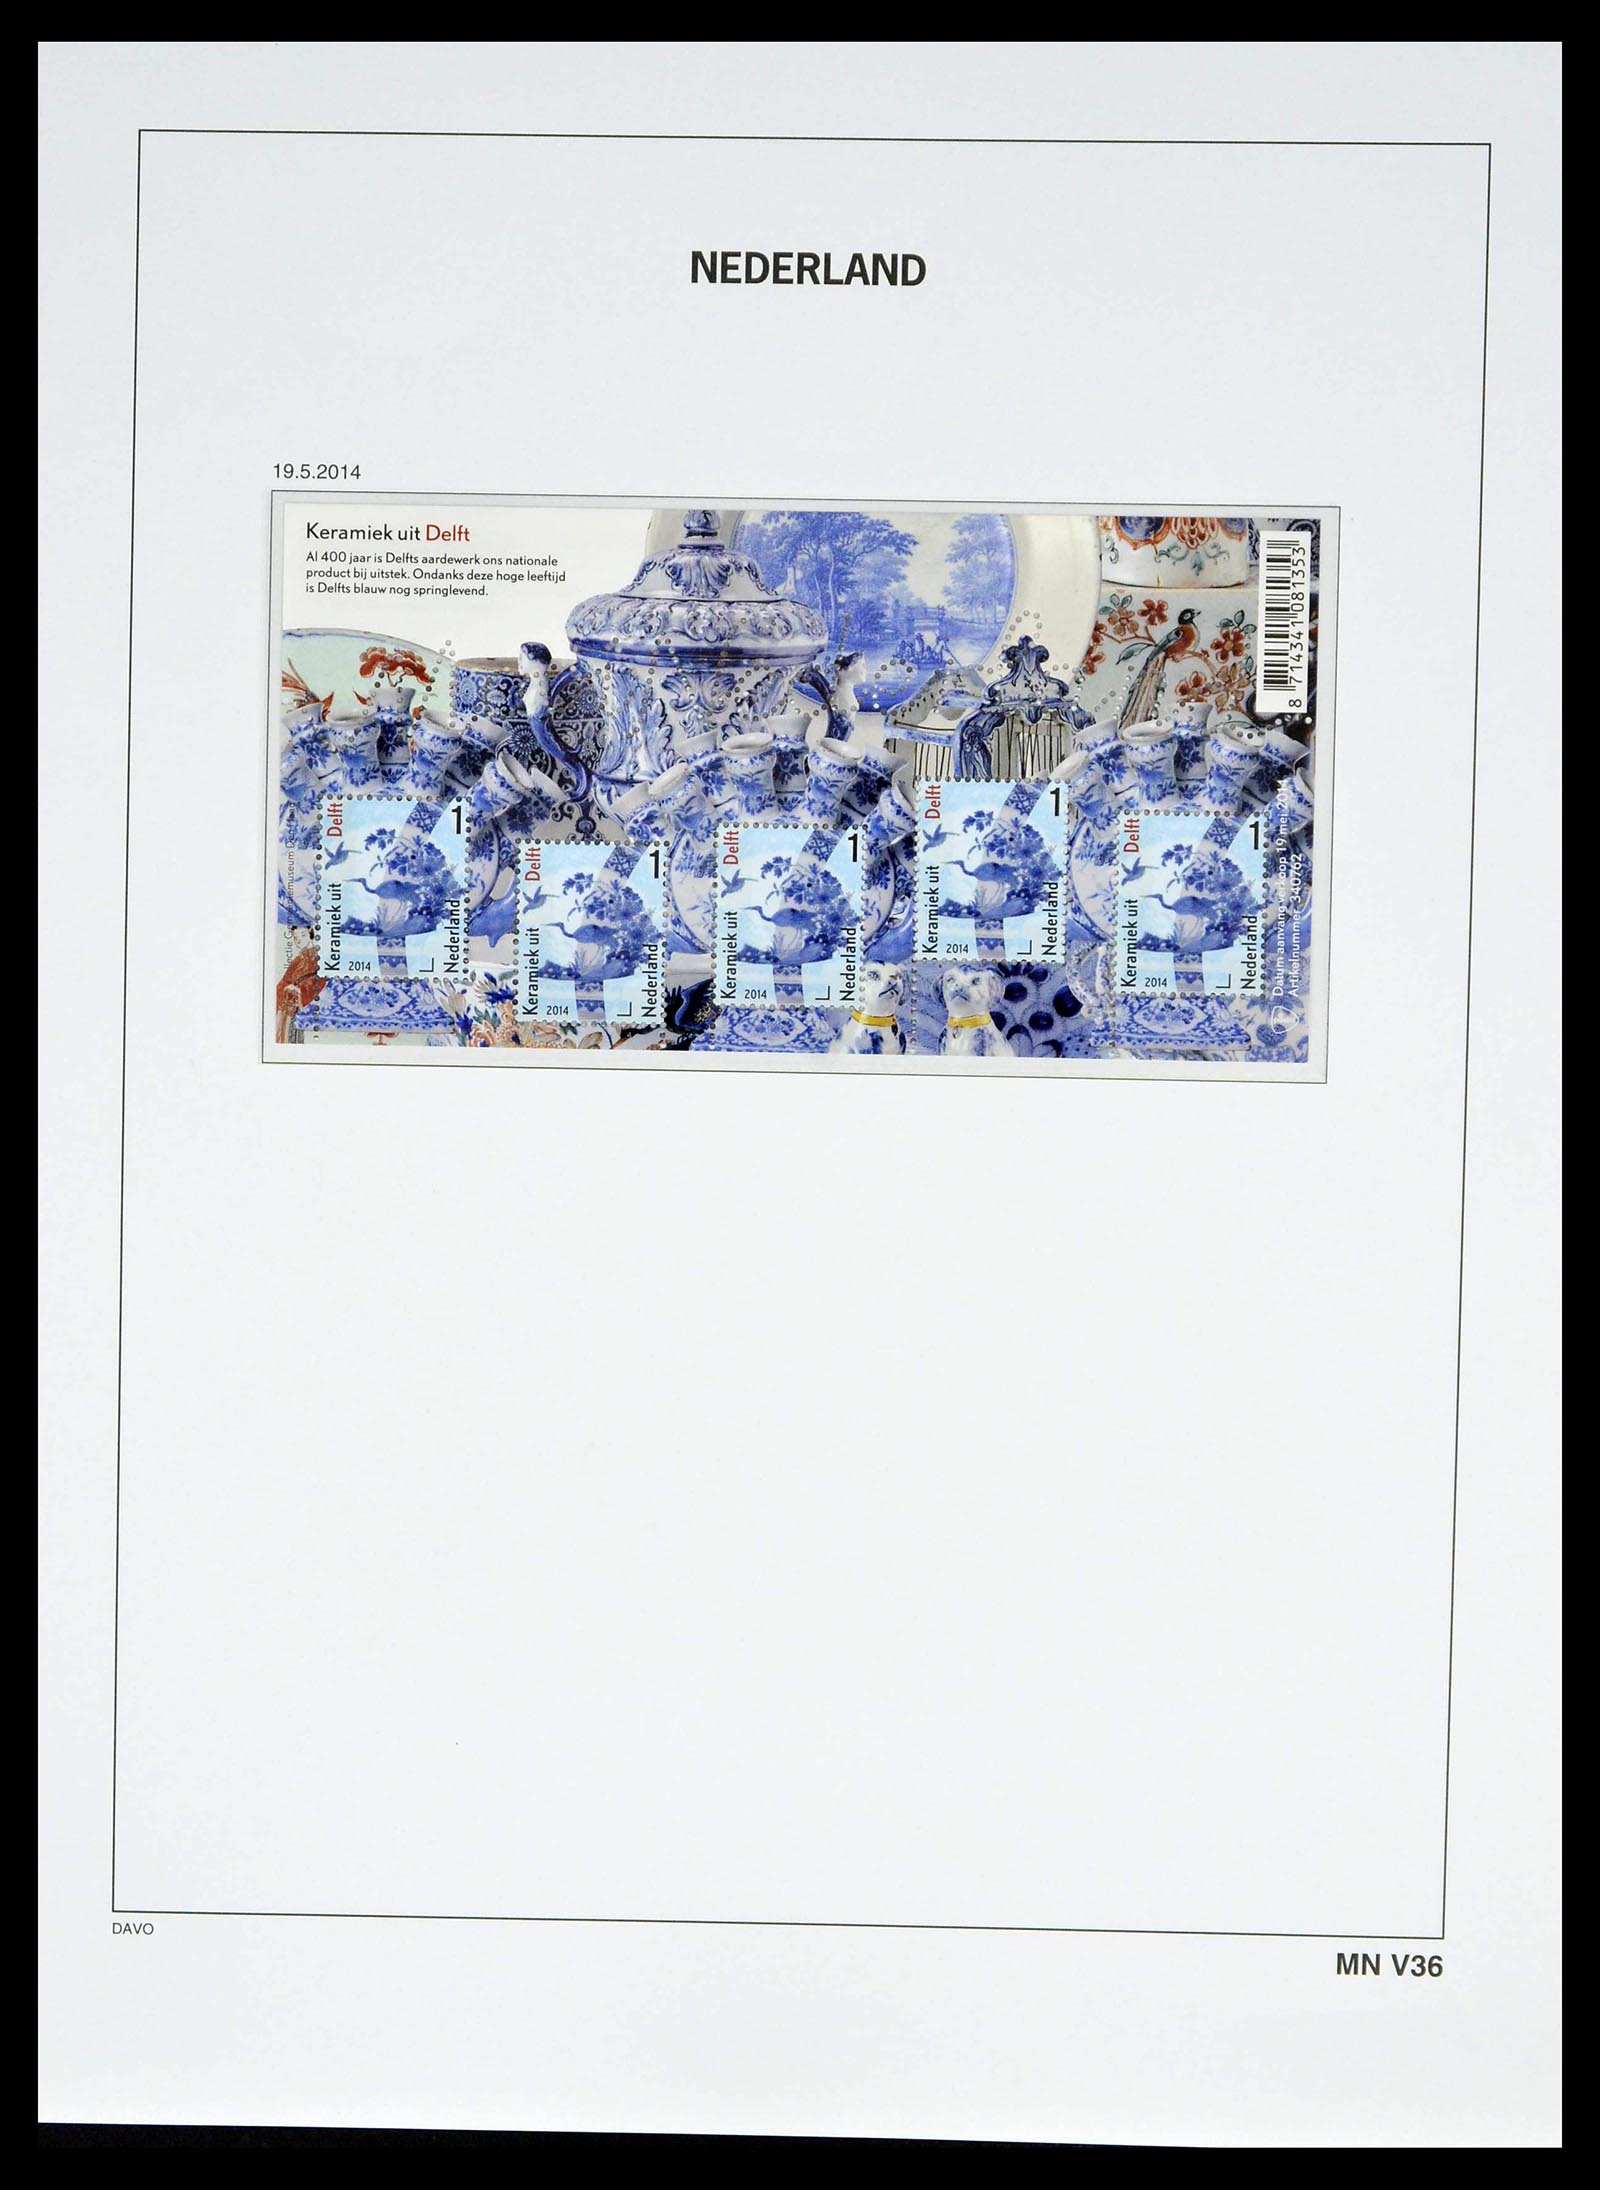 39134 0255 - Stamp collection 39134 Netherlands sheetlets 1992-2019!